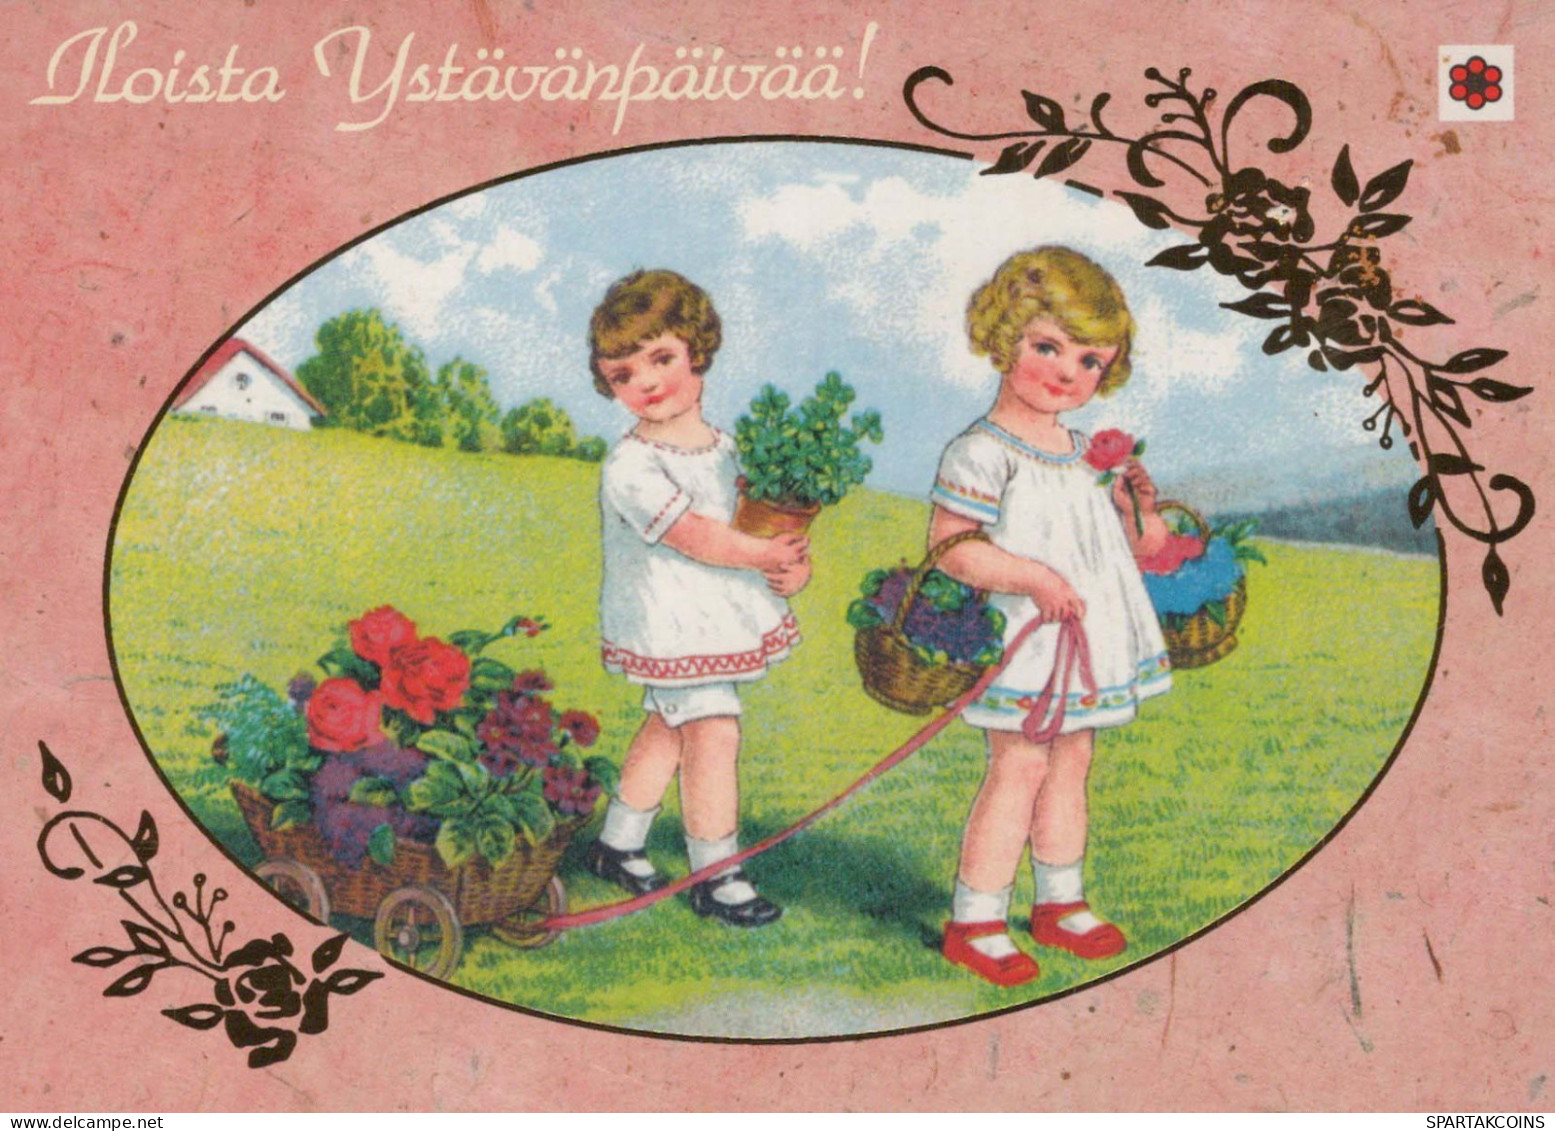 CHILDREN CHILDREN Scene S Landscapes Vintage Postcard CPSM #PBU362.GB - Scenes & Landscapes